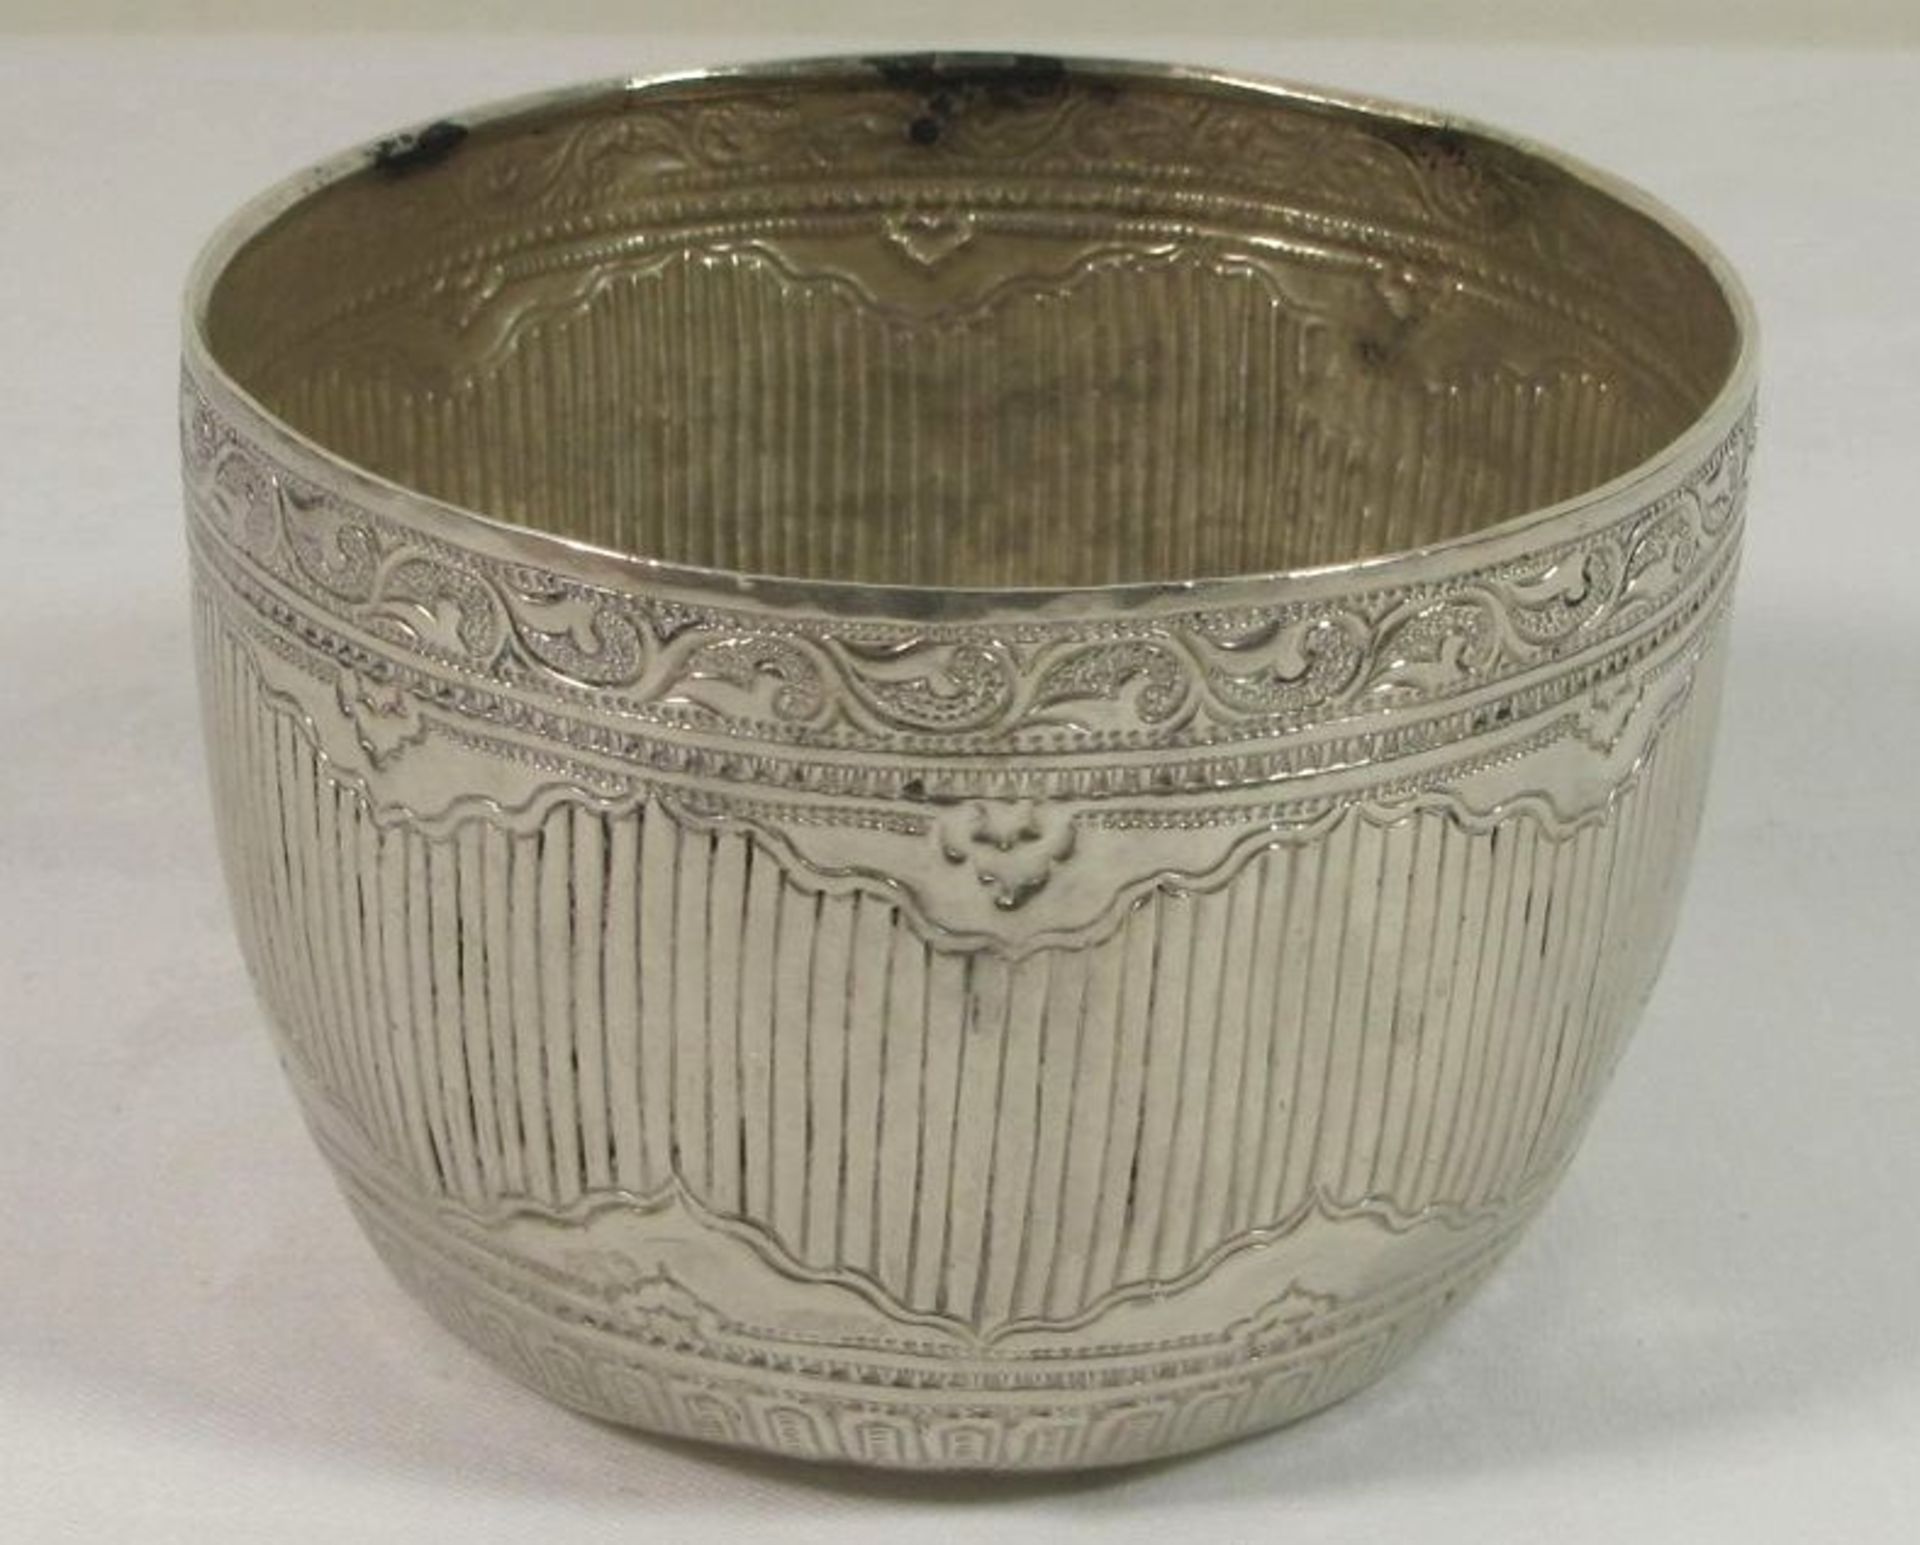 Schale, orientalisch, wohl um 1900, Silber geprüft, 164,8g, H-7,5cm D-10,5cm.